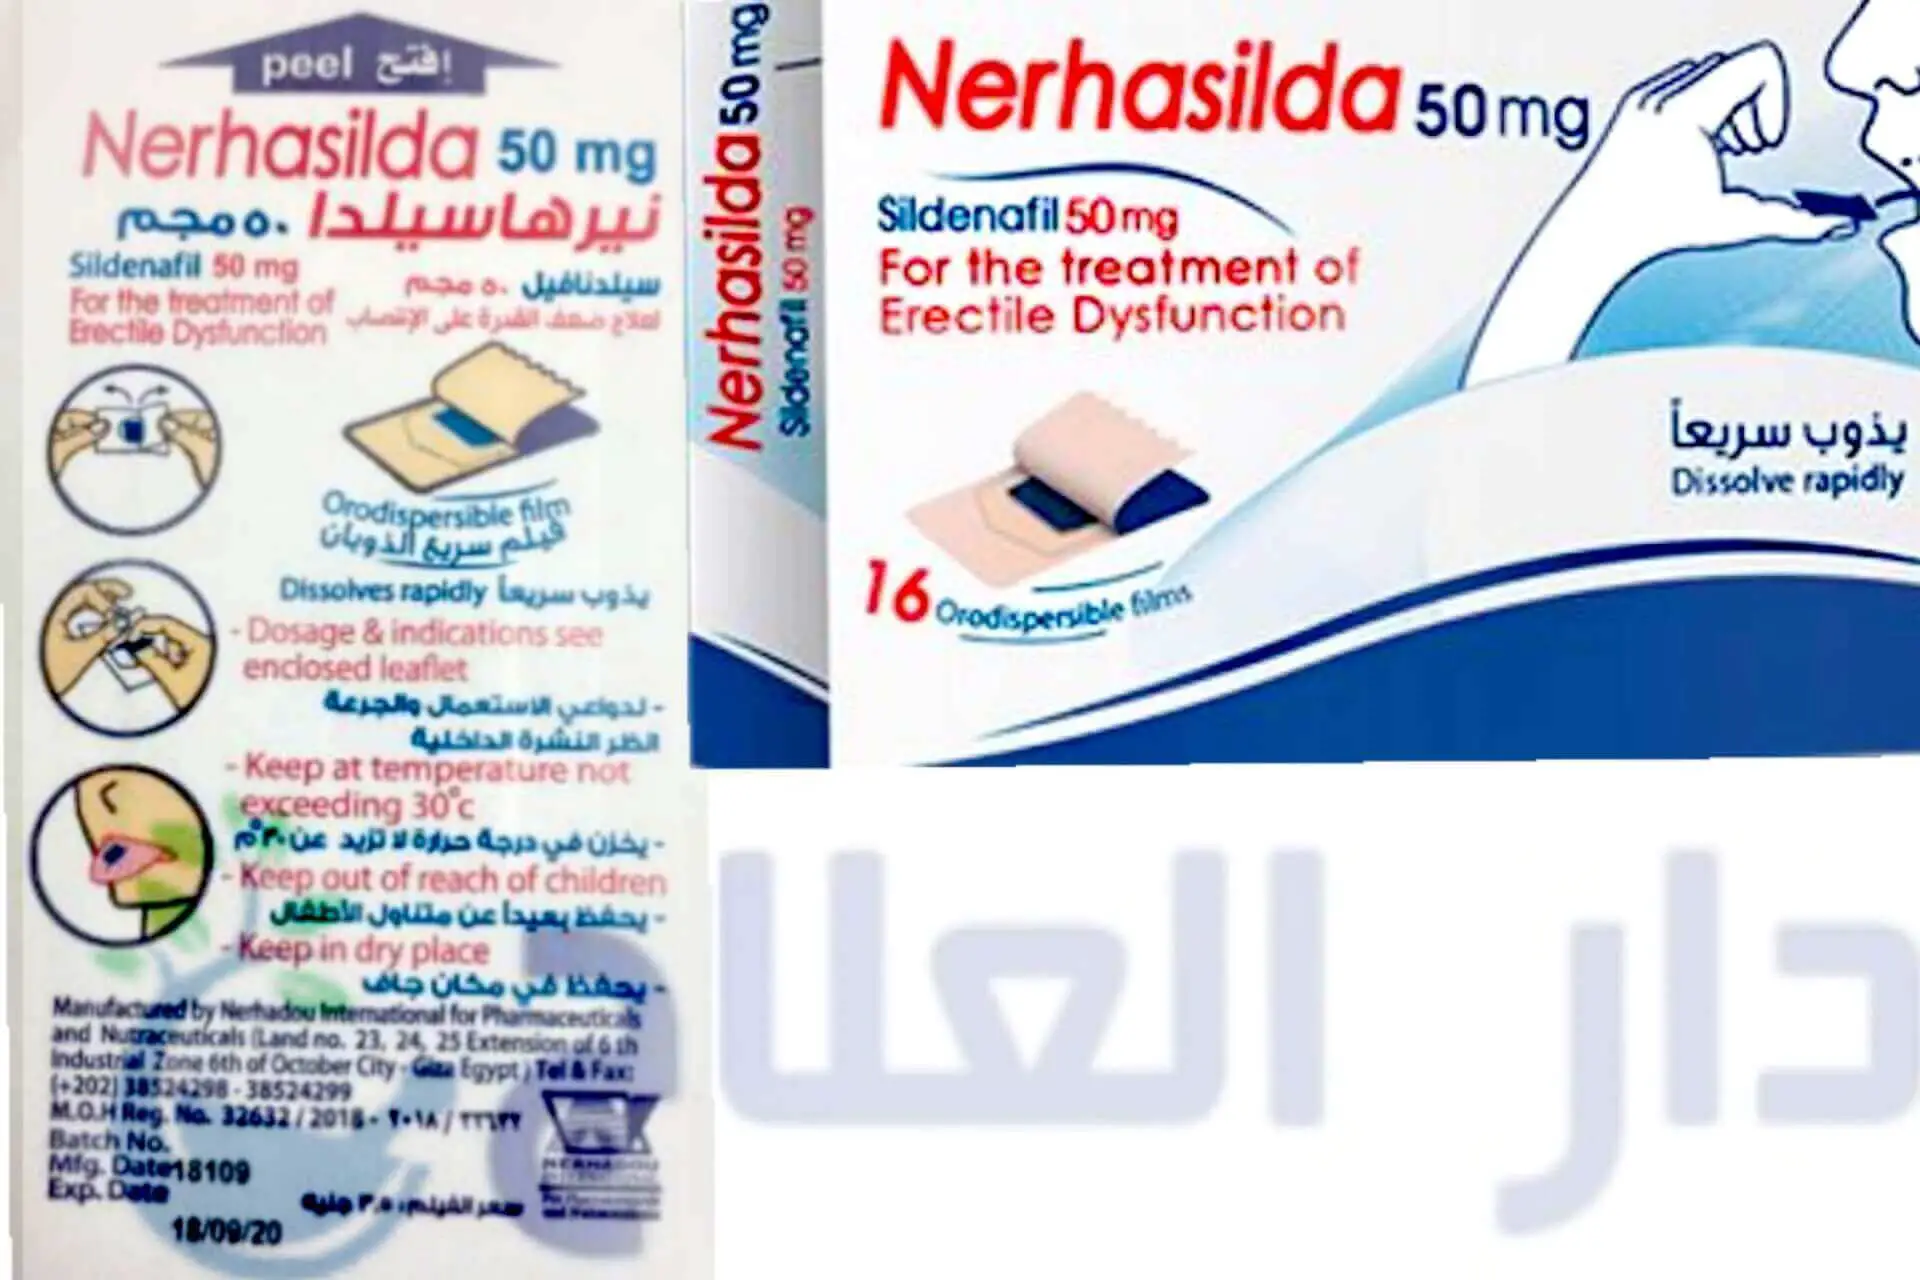 نيرهاسيلدا - نيرهاسيلدا 50 - نيرهاسيلدا 50 مجم - دواء نيرهاسيلدا - نيرهاسيلدا لعلاج ضعف الانتصاب - nerhasilda